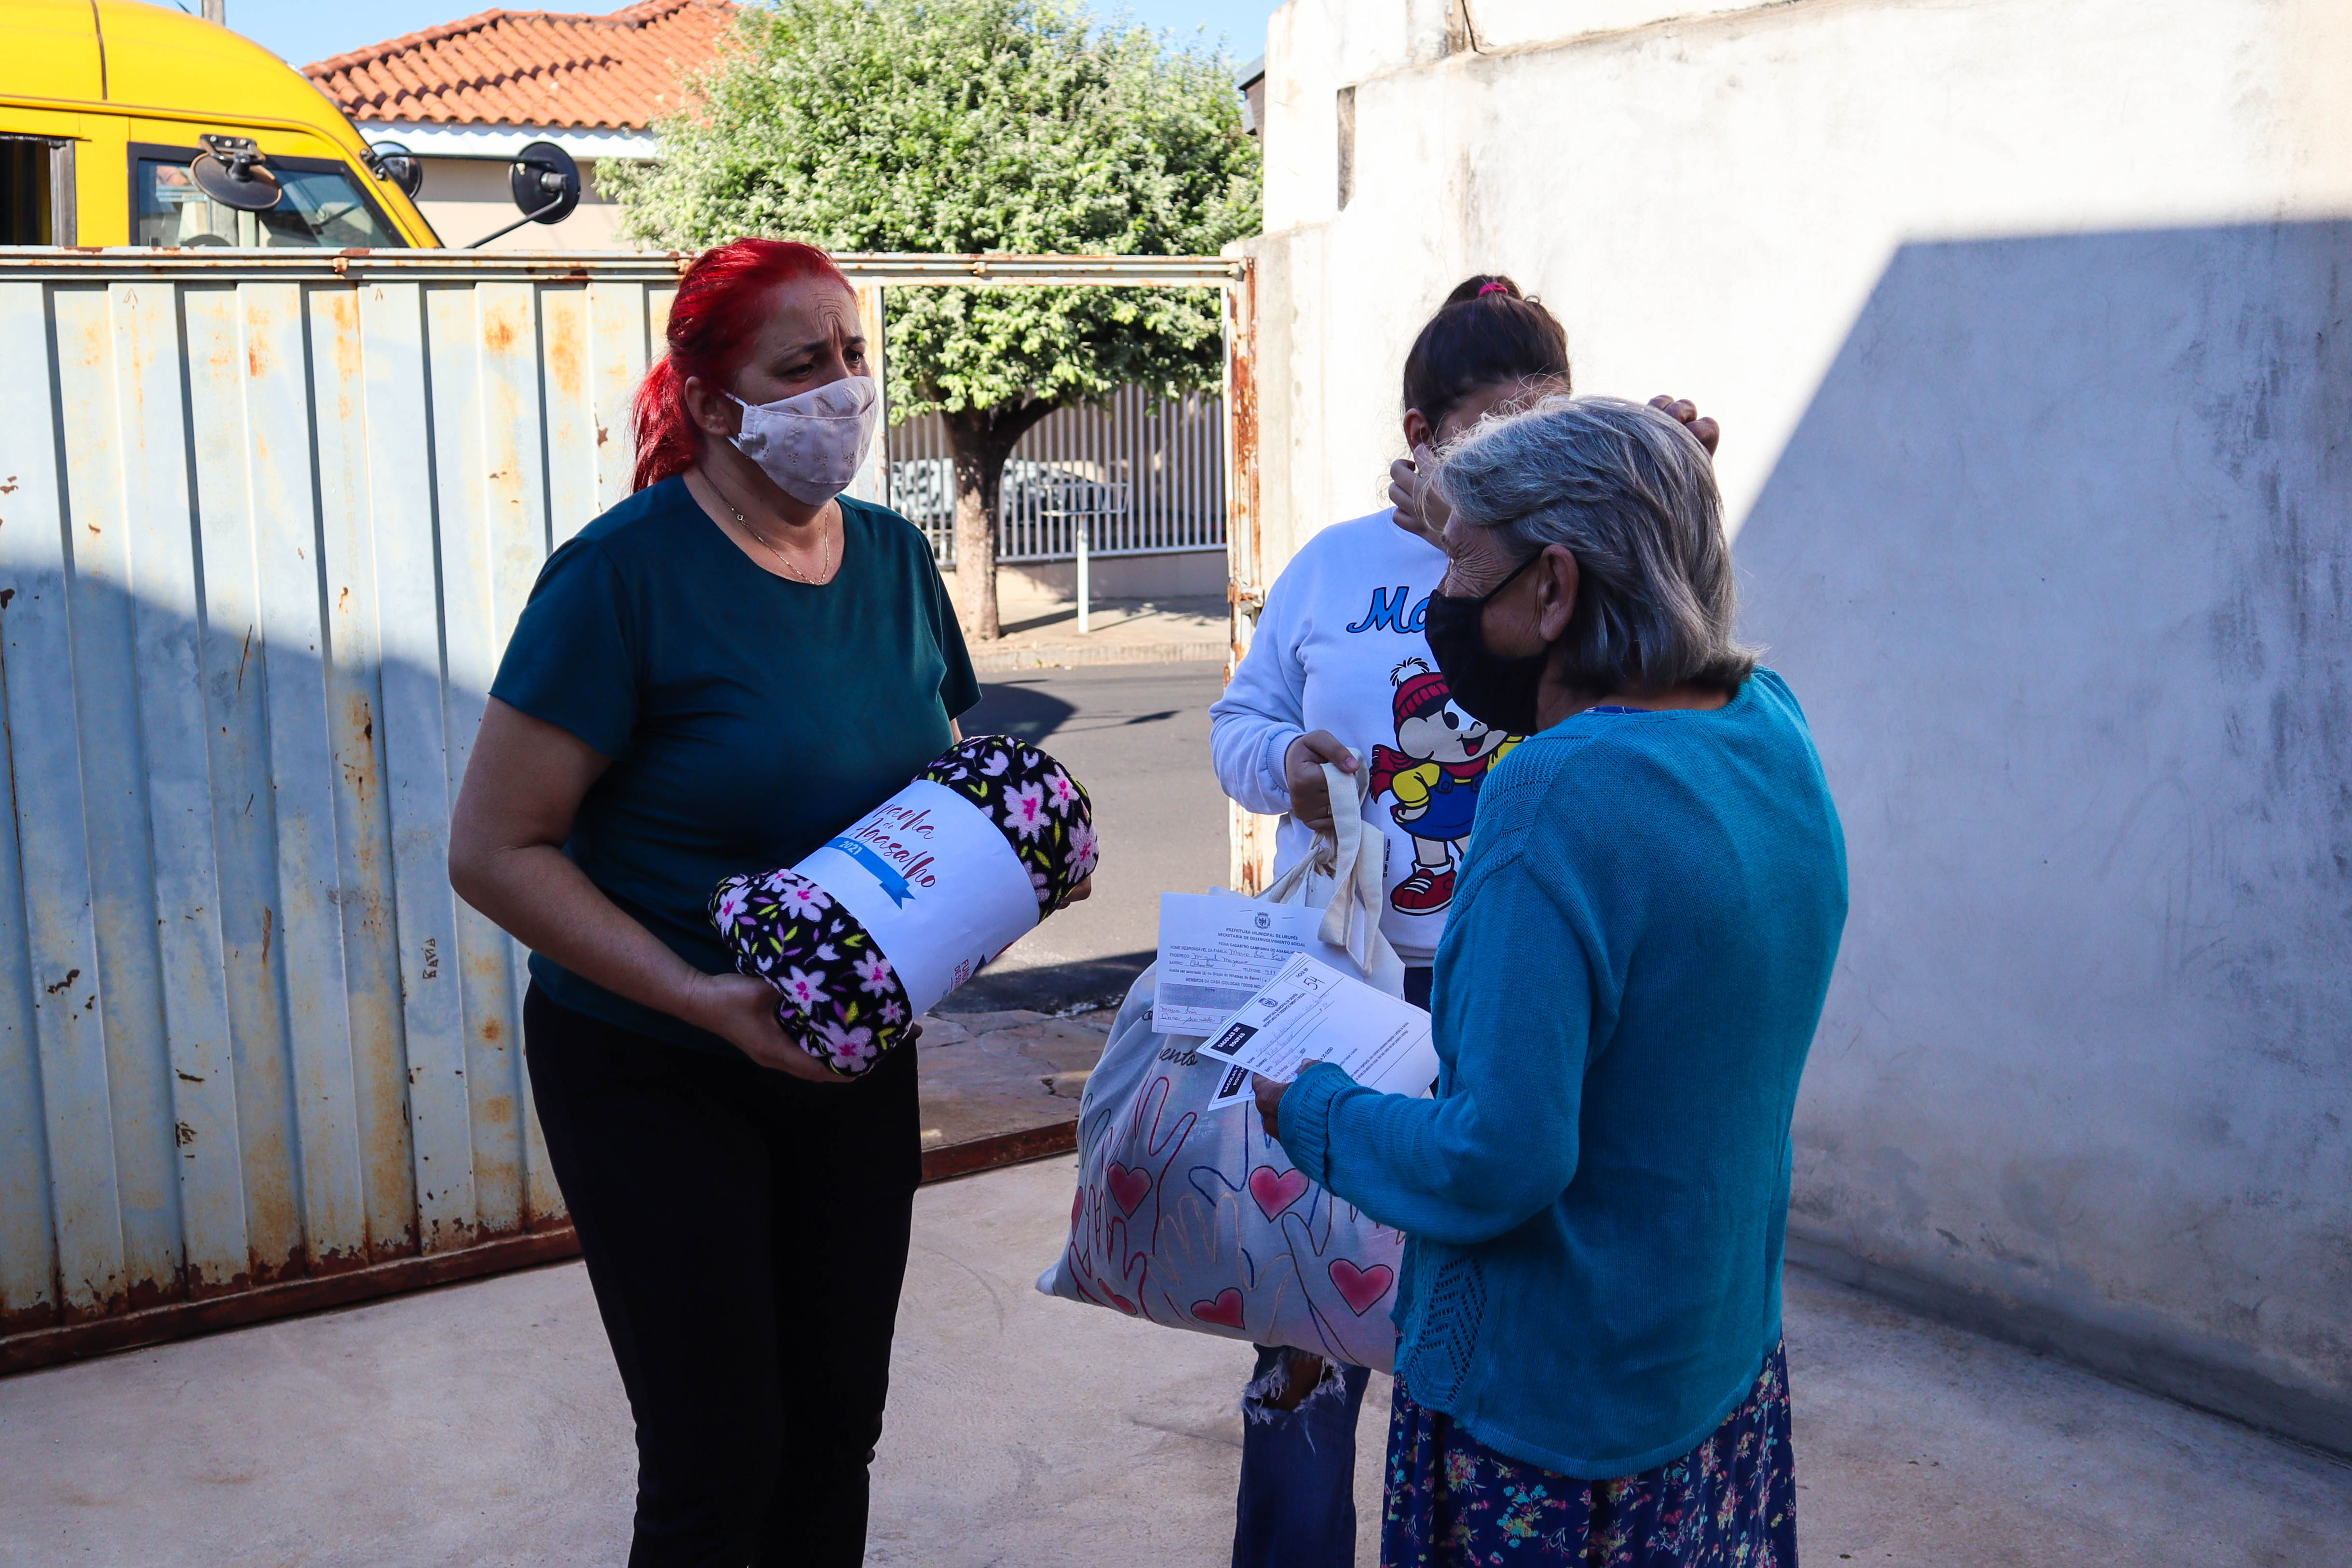 Entrega das doações arrecadadas. Foto: Carina Costa / Prefeitura de Urupês